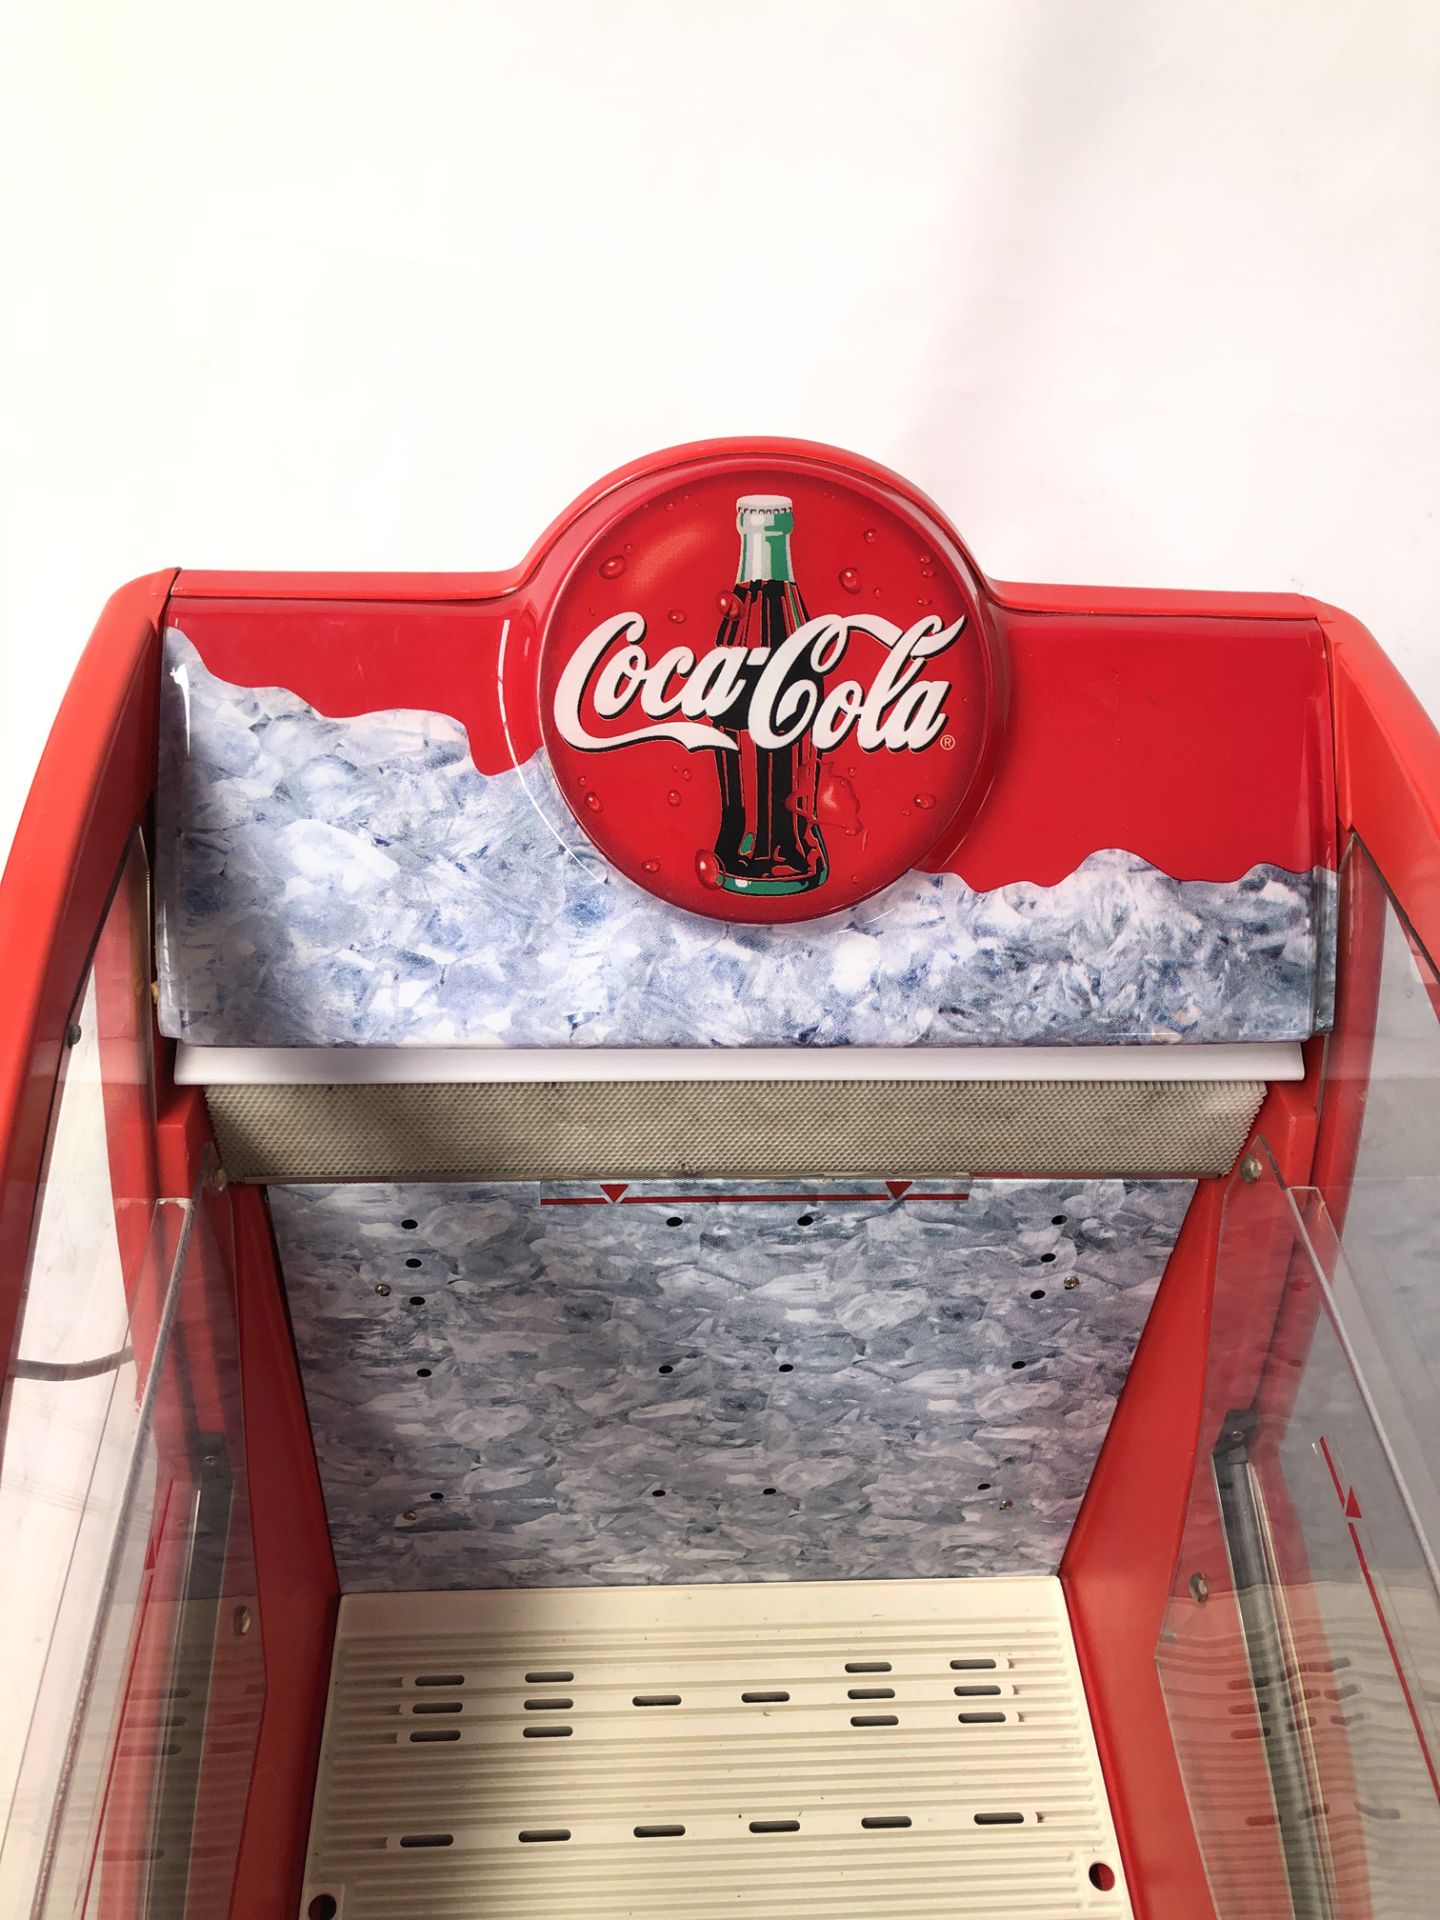 Original 220V Coca Cola bottle cooler - Image 4 of 5